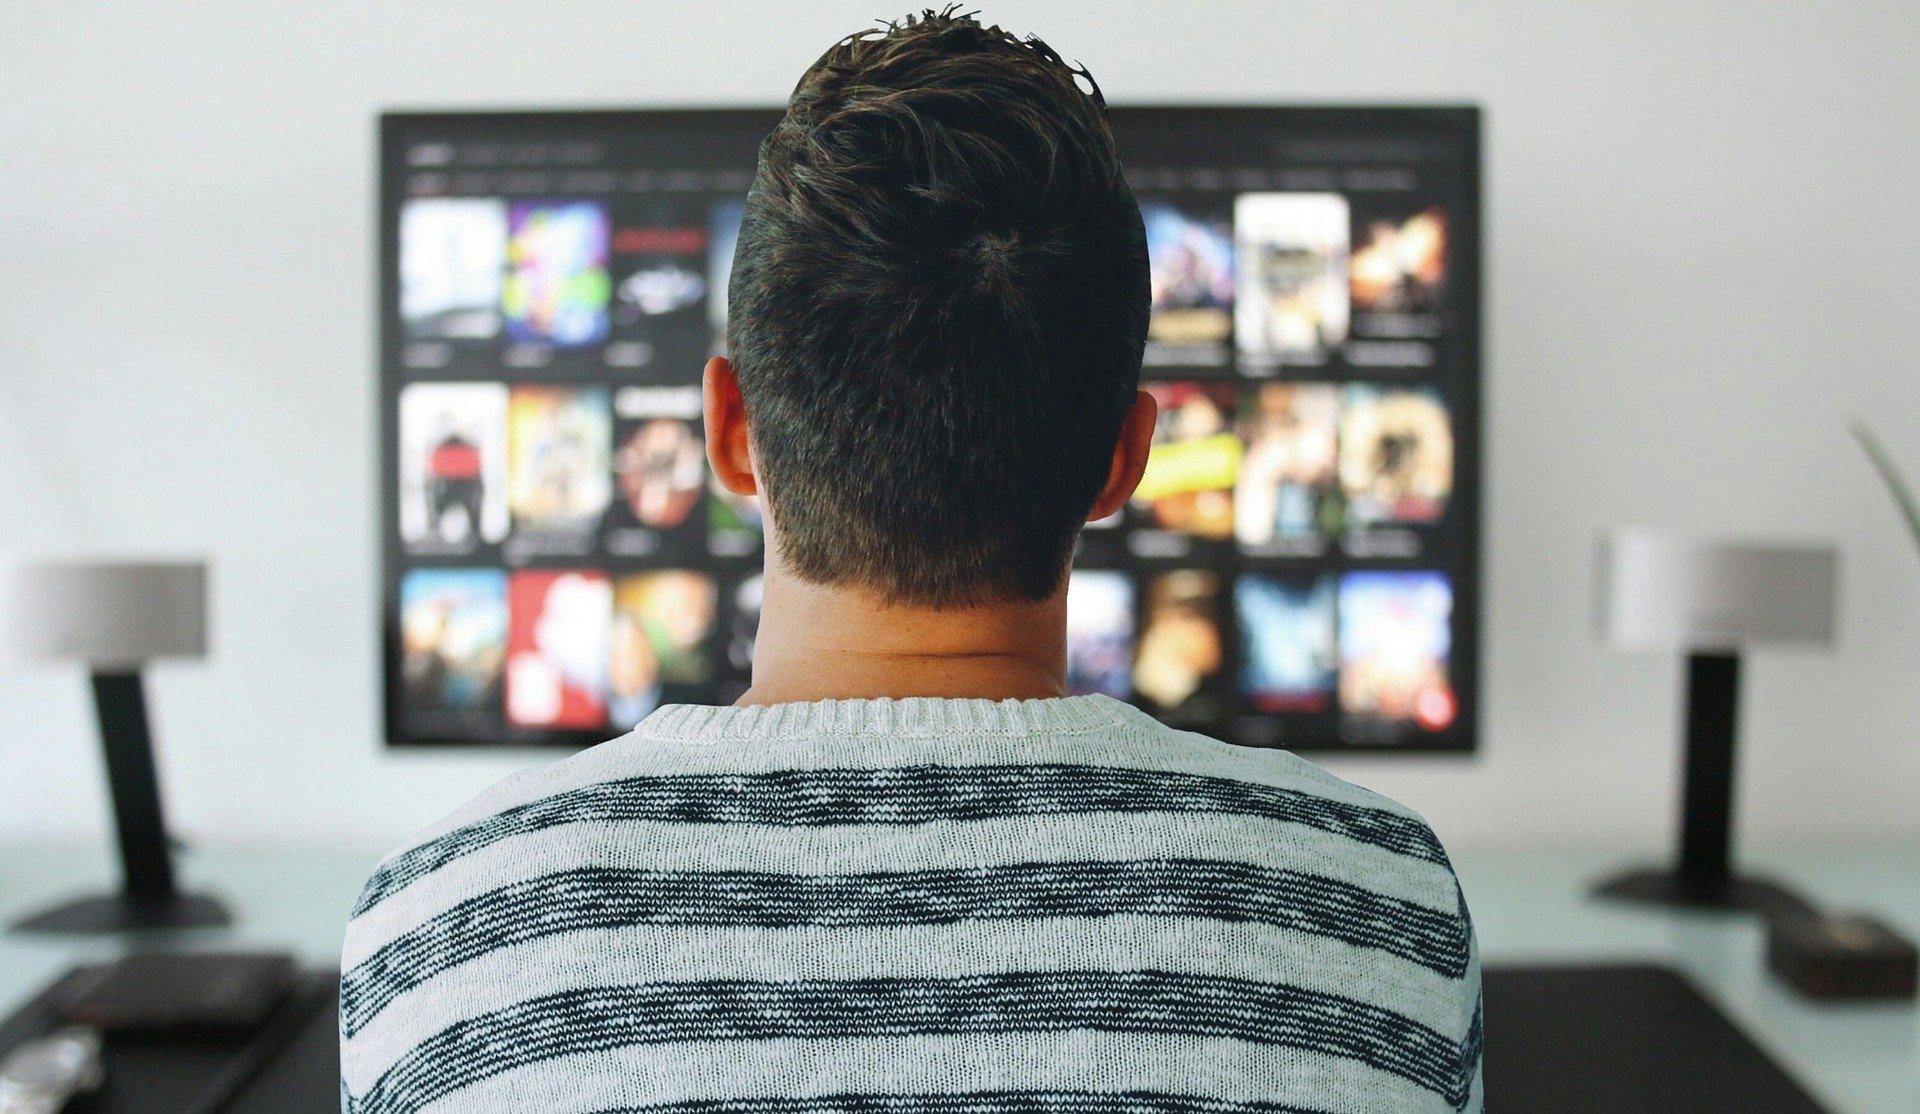 Un hombre mirando la tele. Fuente: Pixabay.